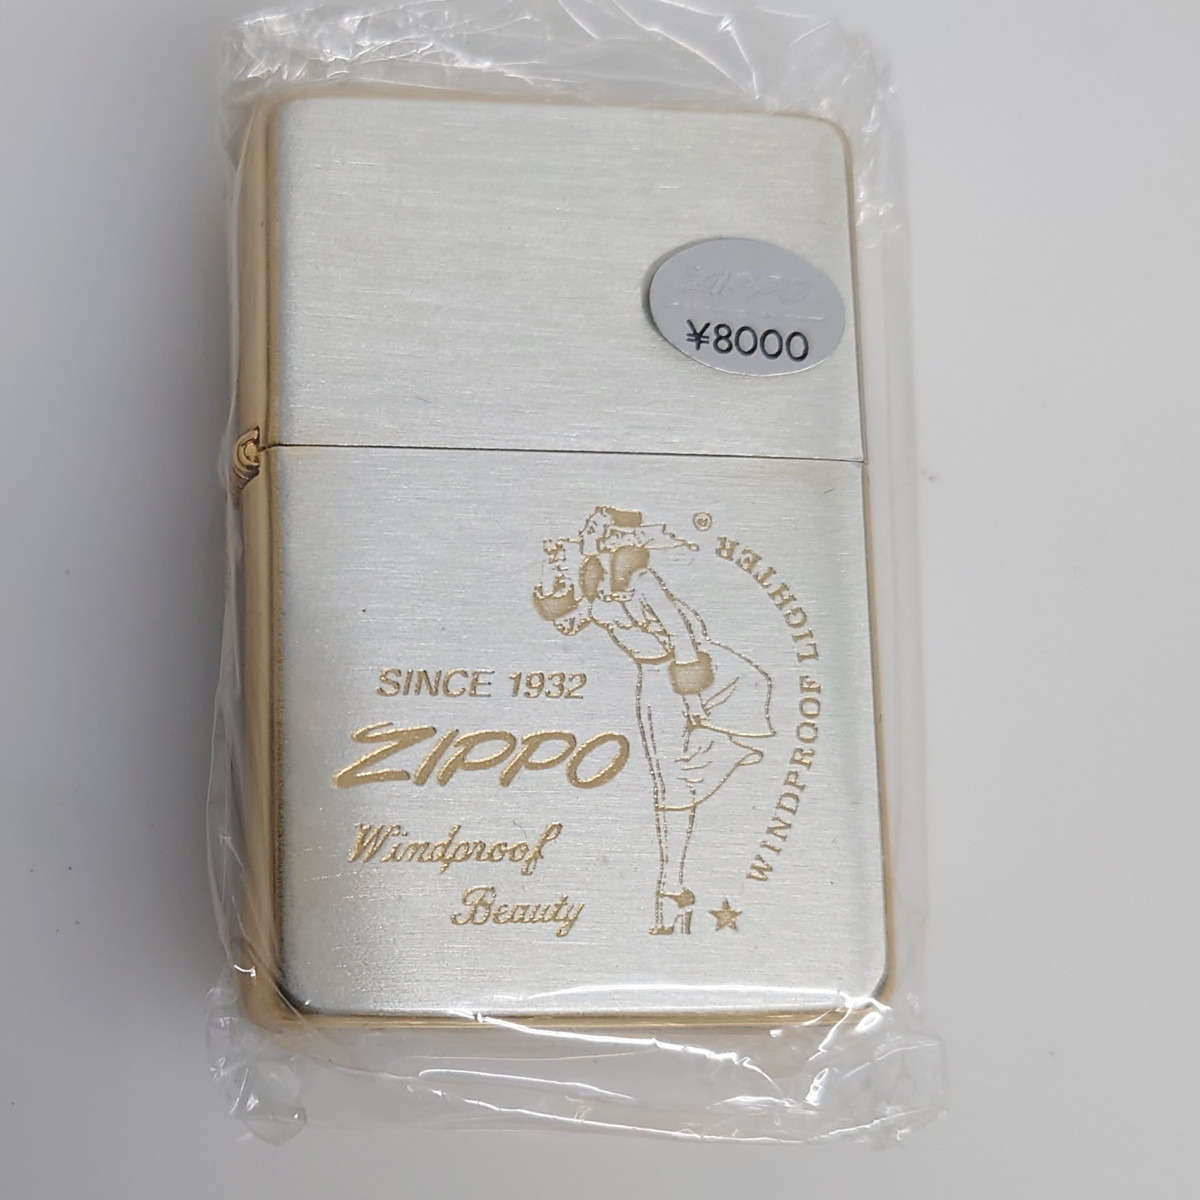 日本製 1995年製 Windy ZIPPO ジッポ ecousarecycling.com